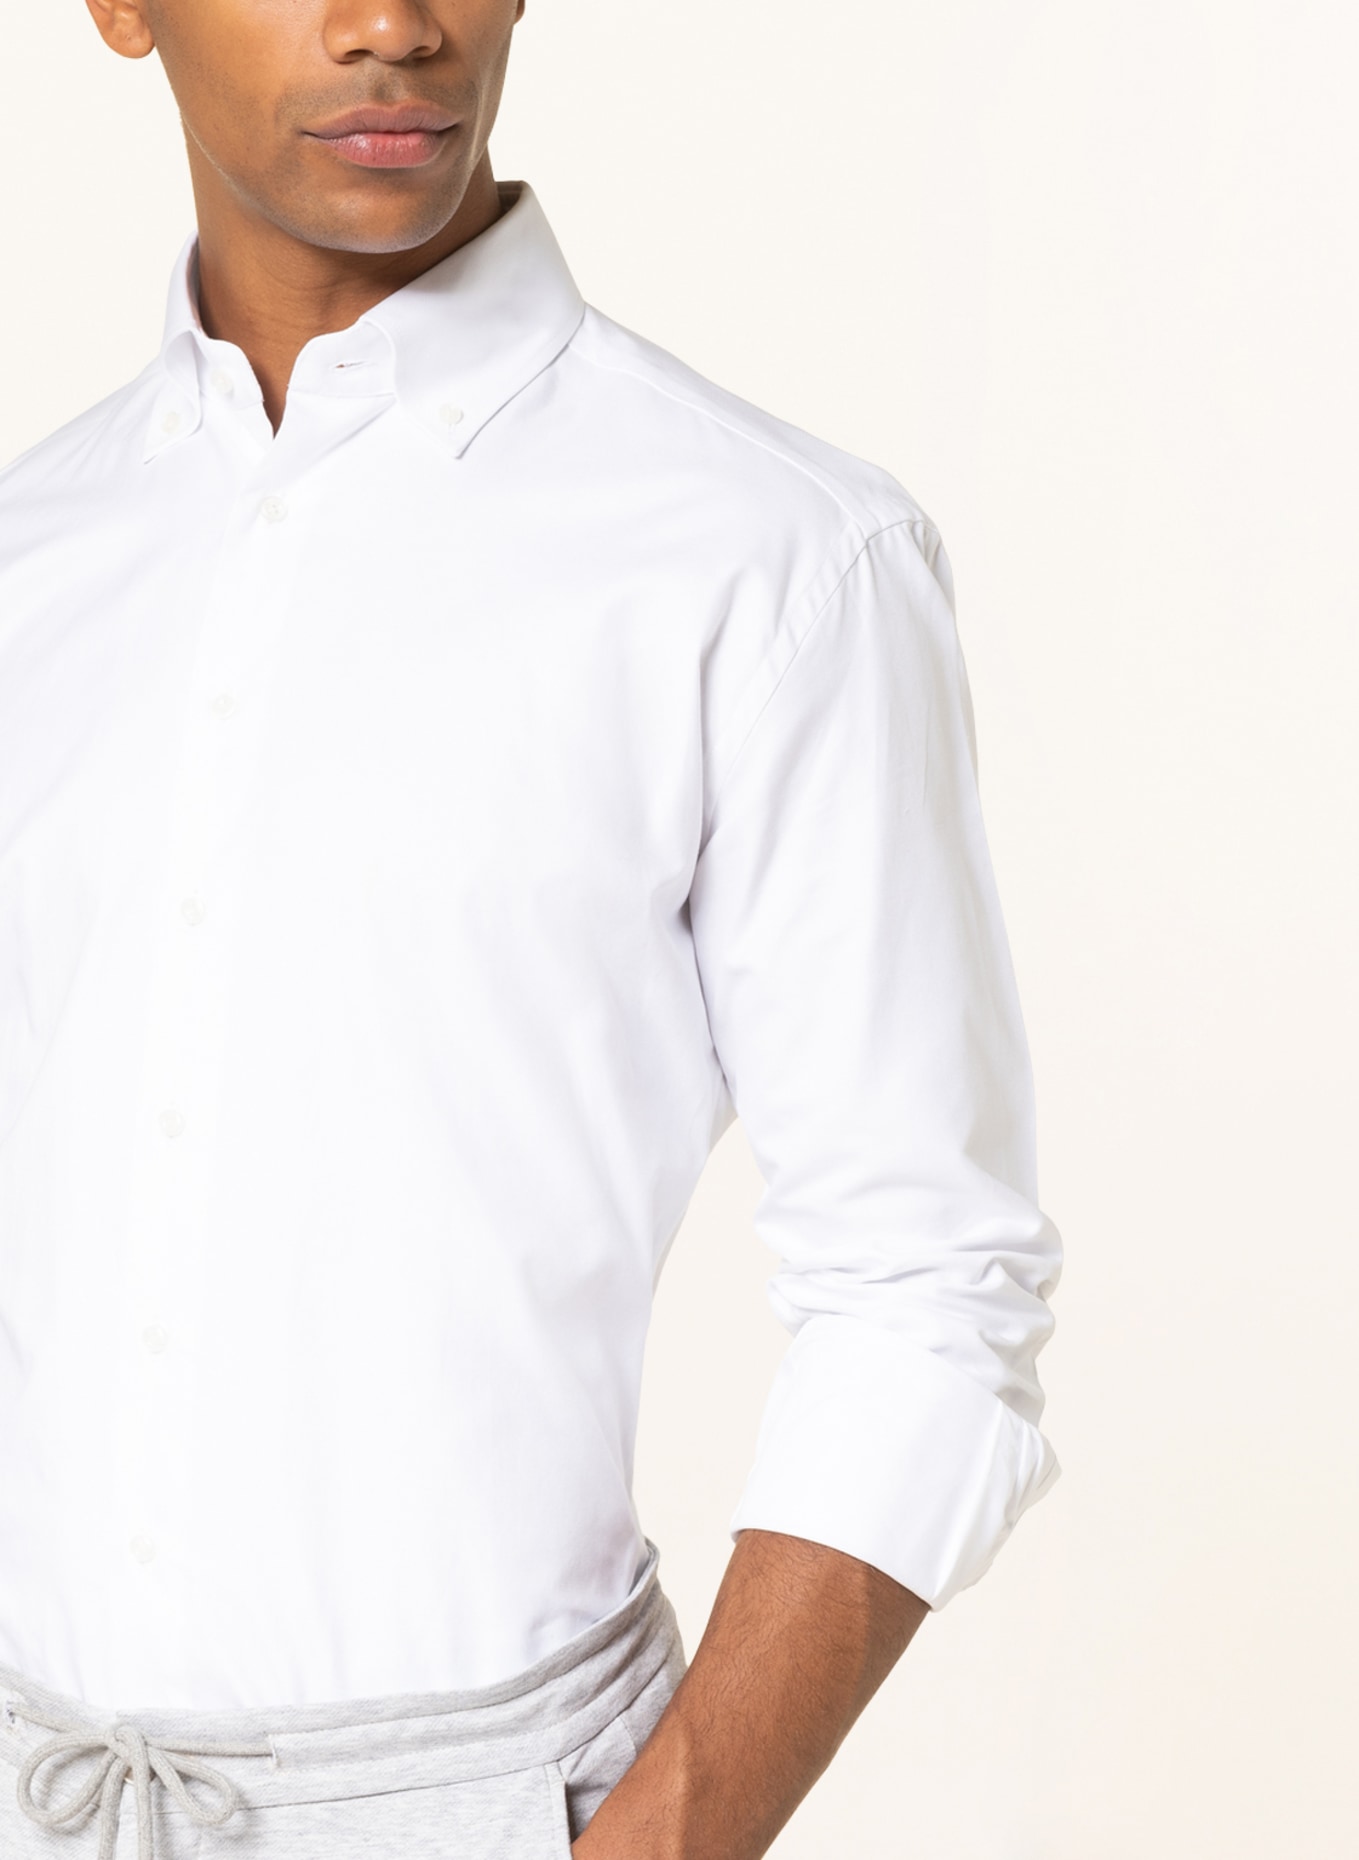 ARTIGIANO Piqué shirt classic fit , Color: WHITE (Image 4)